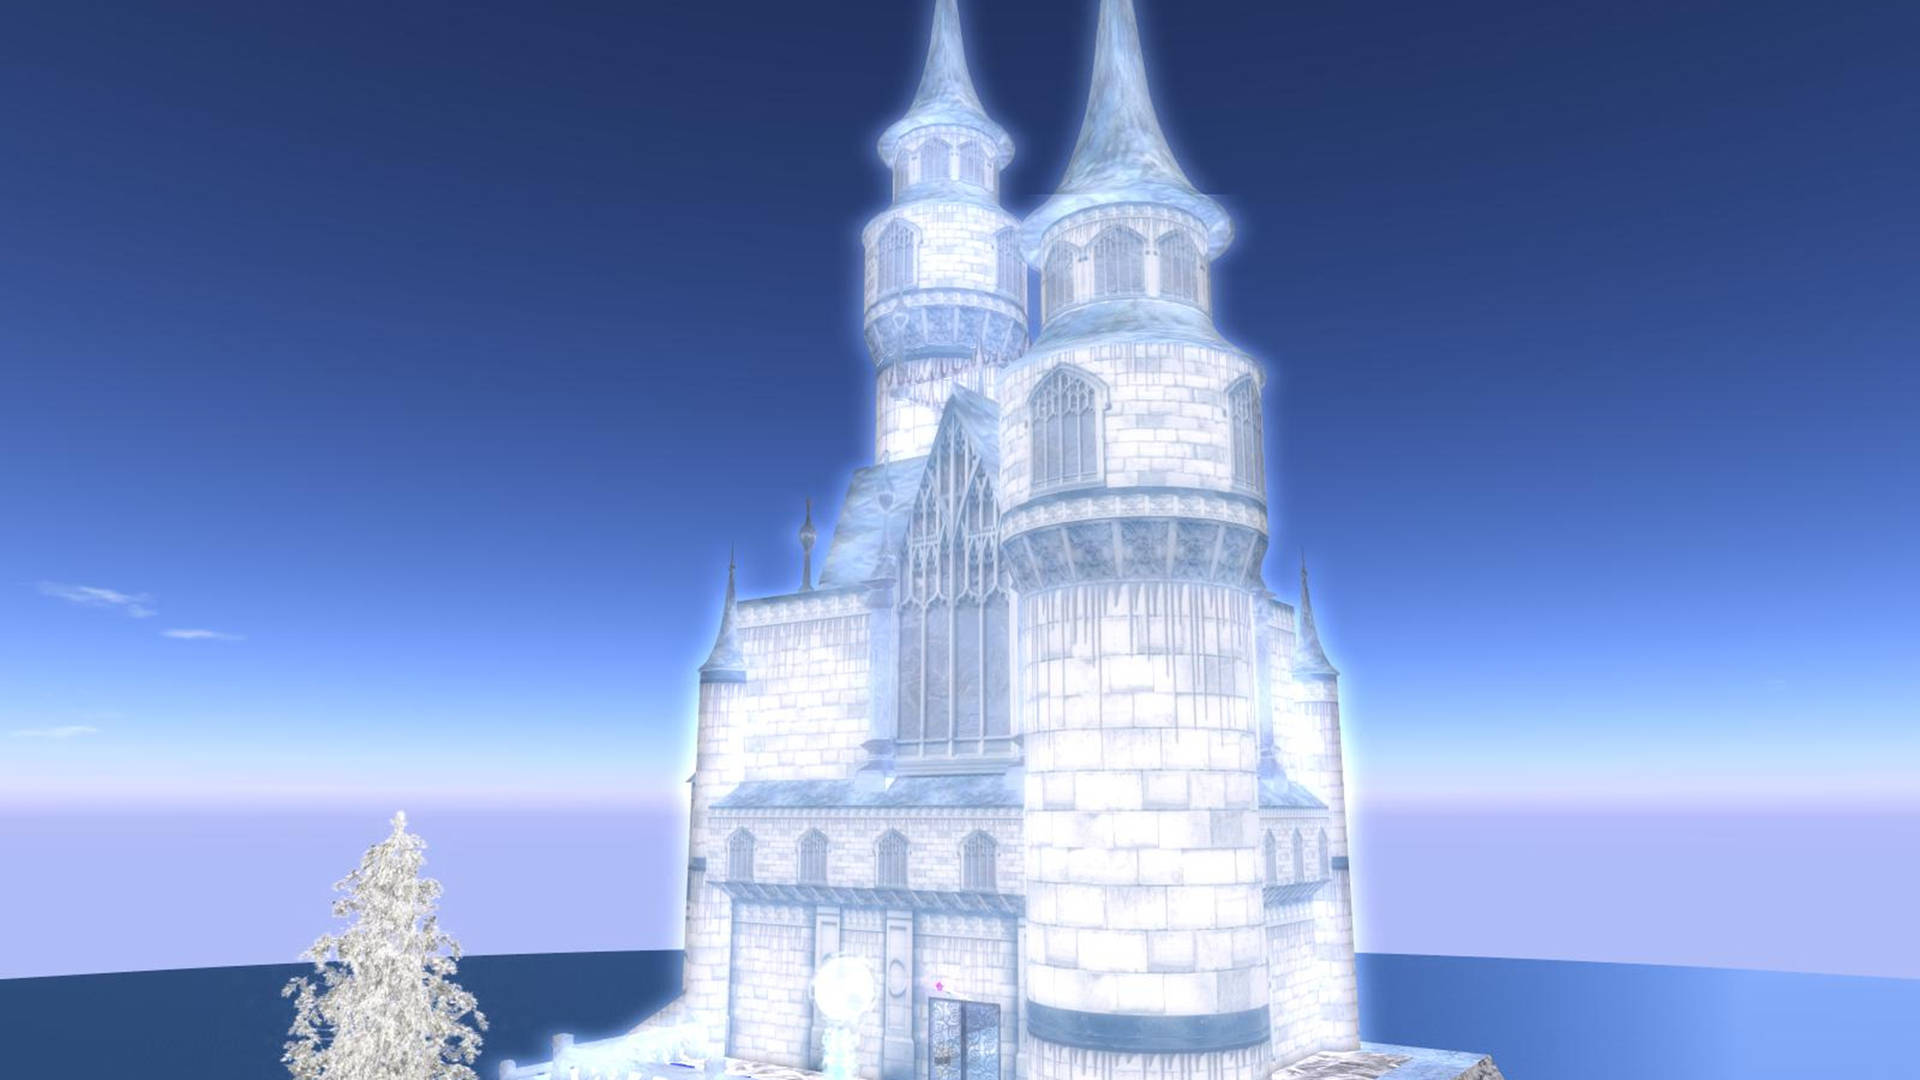 Glowing Frozen Castle Wallpaper